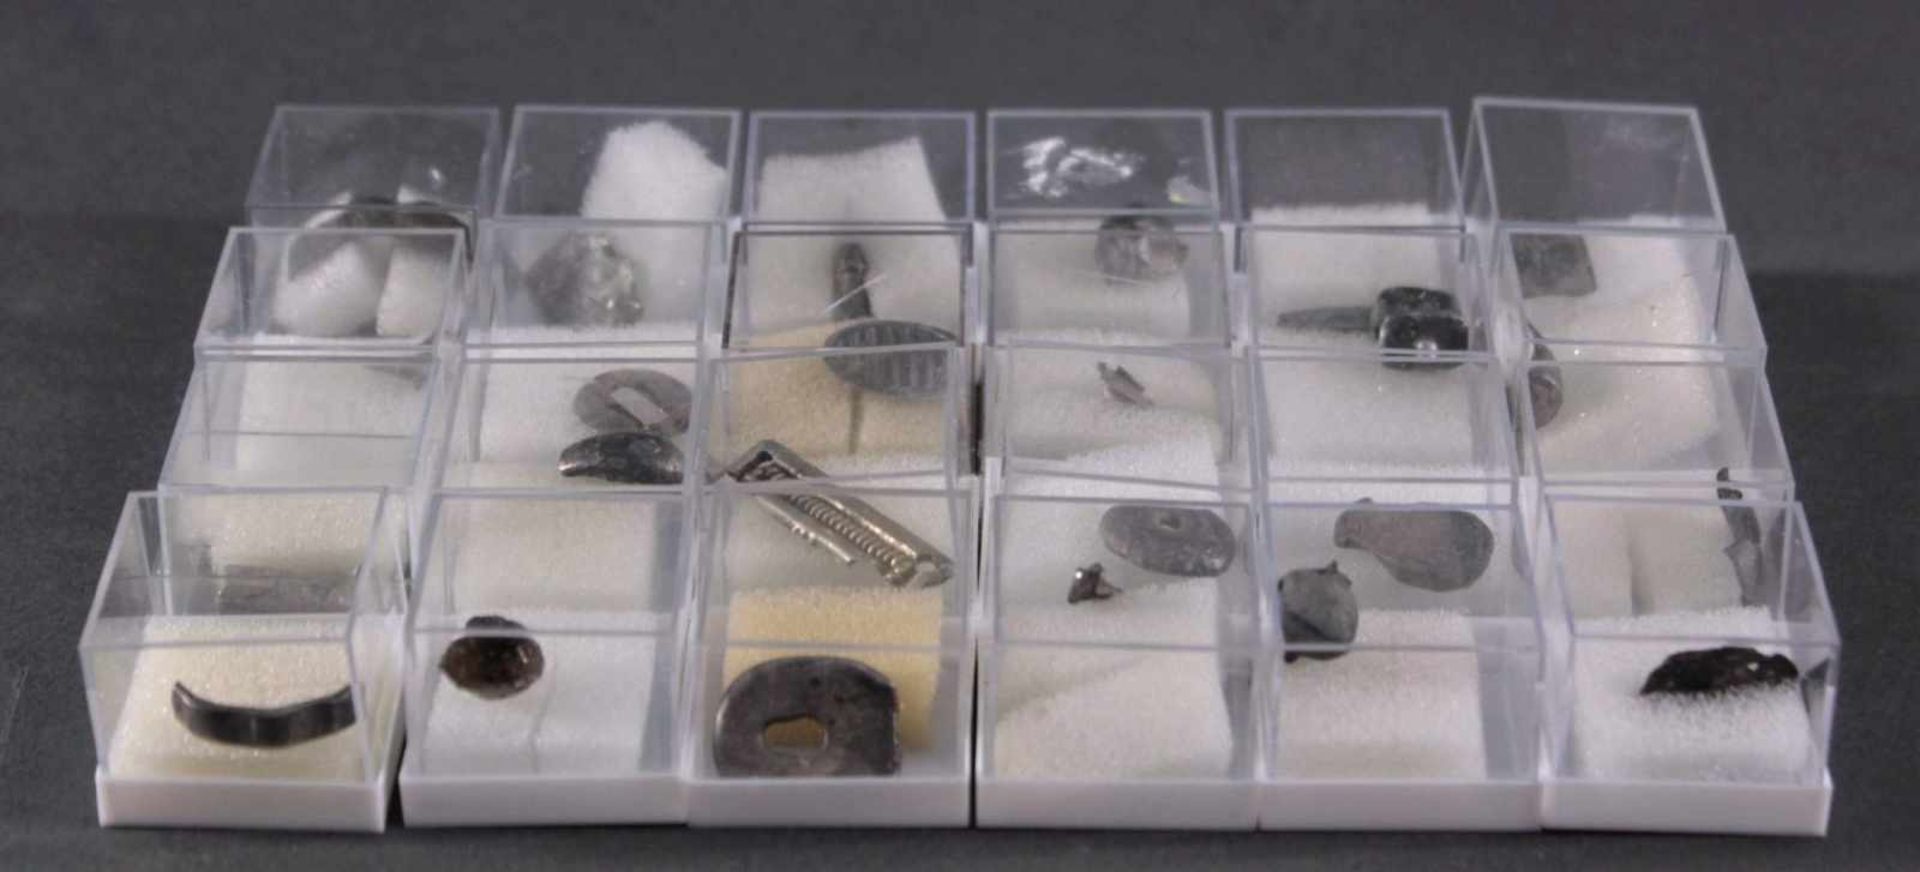 24 römische SilberteileSchmuckteile in den Größen 1,5 bis 3 cm - Bild 4 aus 4